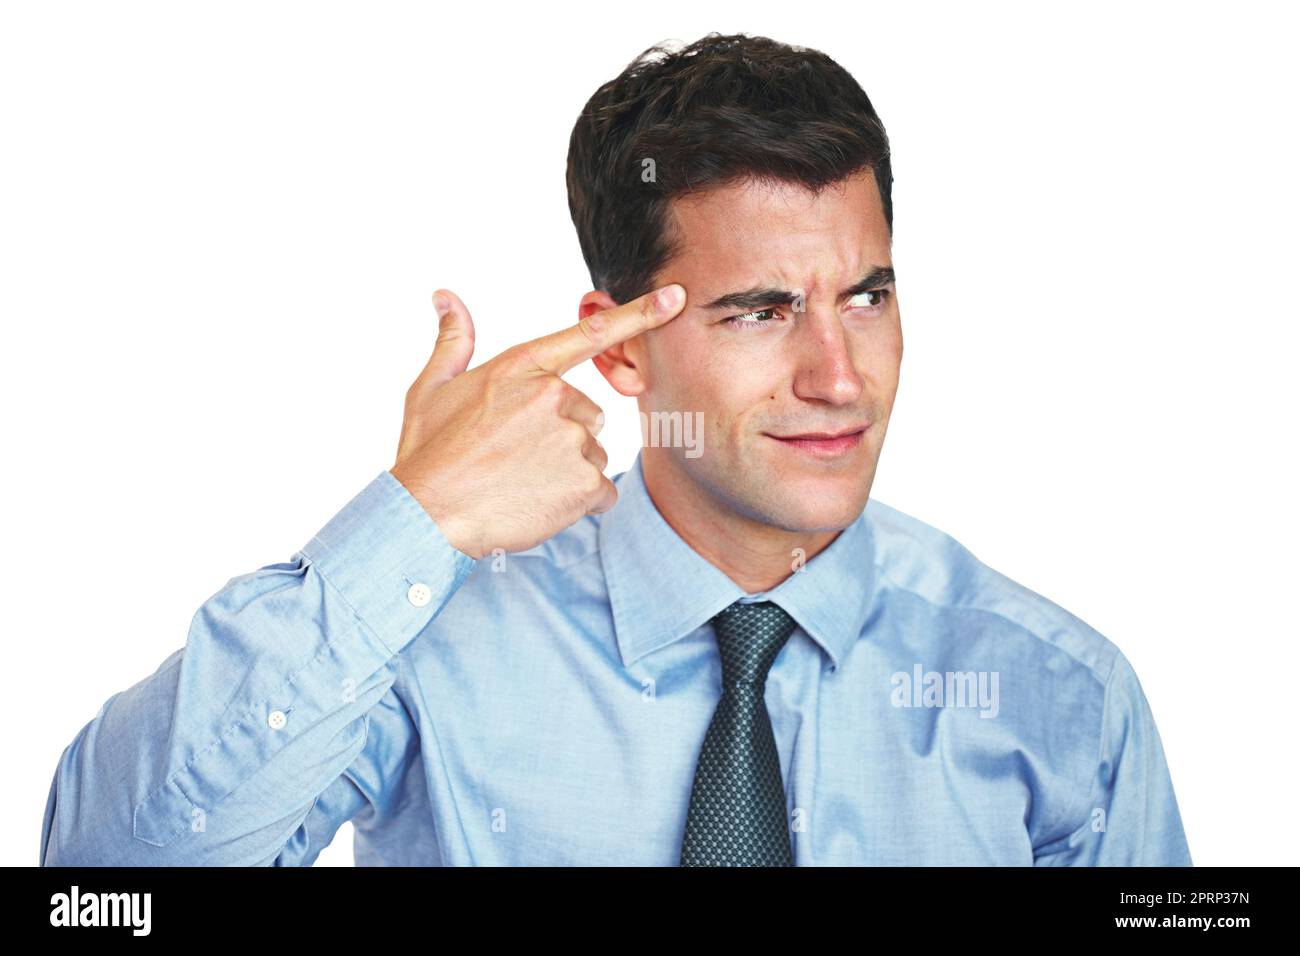 Il suffit de me tirer maintenant... photo en studio d'un jeune homme d'affaires en train de faire un geste insultant vers sa tête sur un fond blanc. Banque D'Images